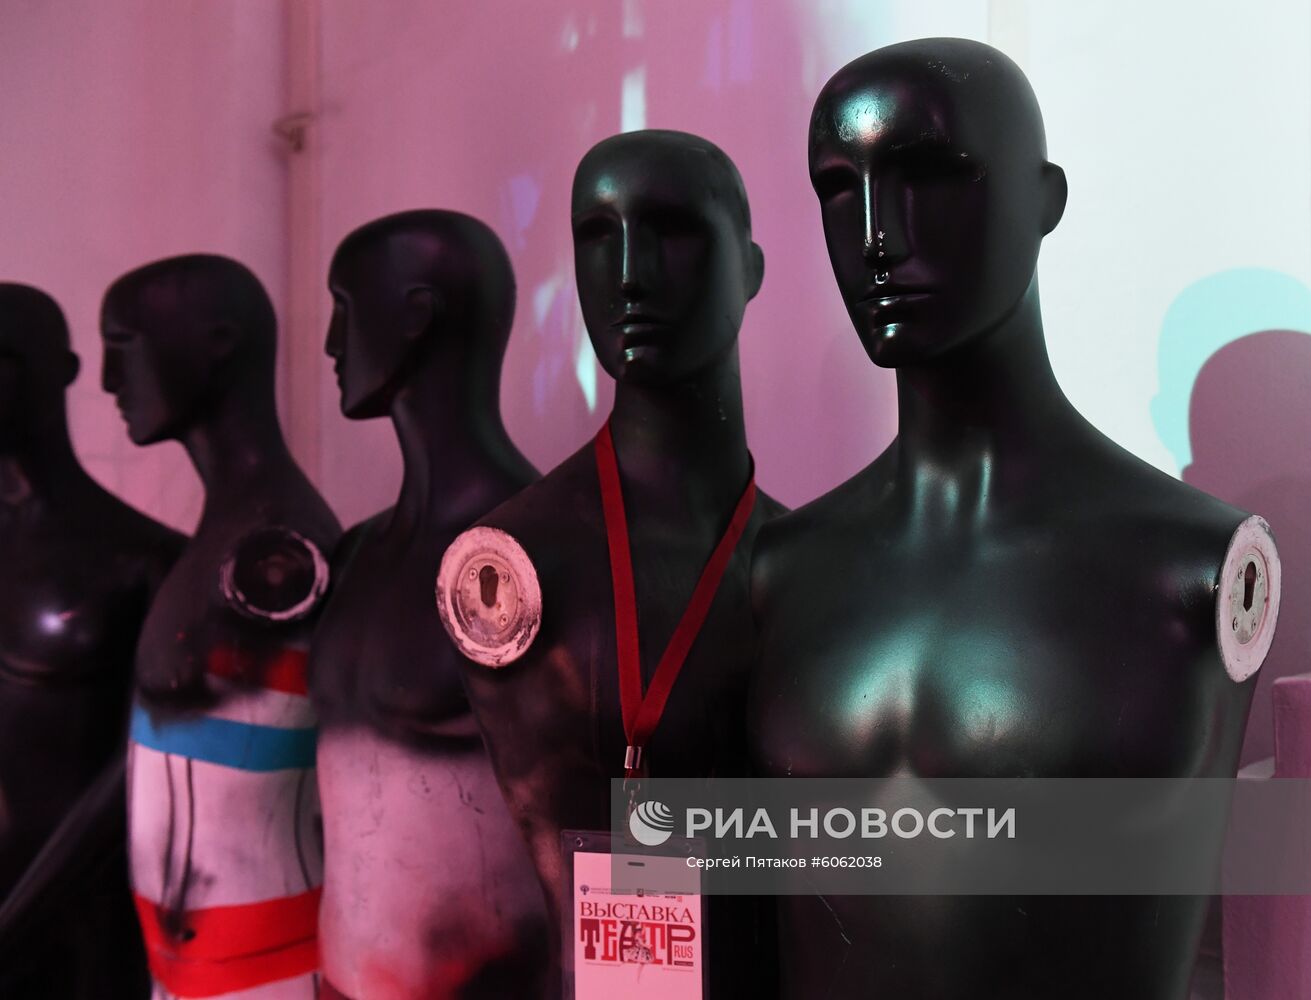 Выставка "Театр.RUS" в Москве